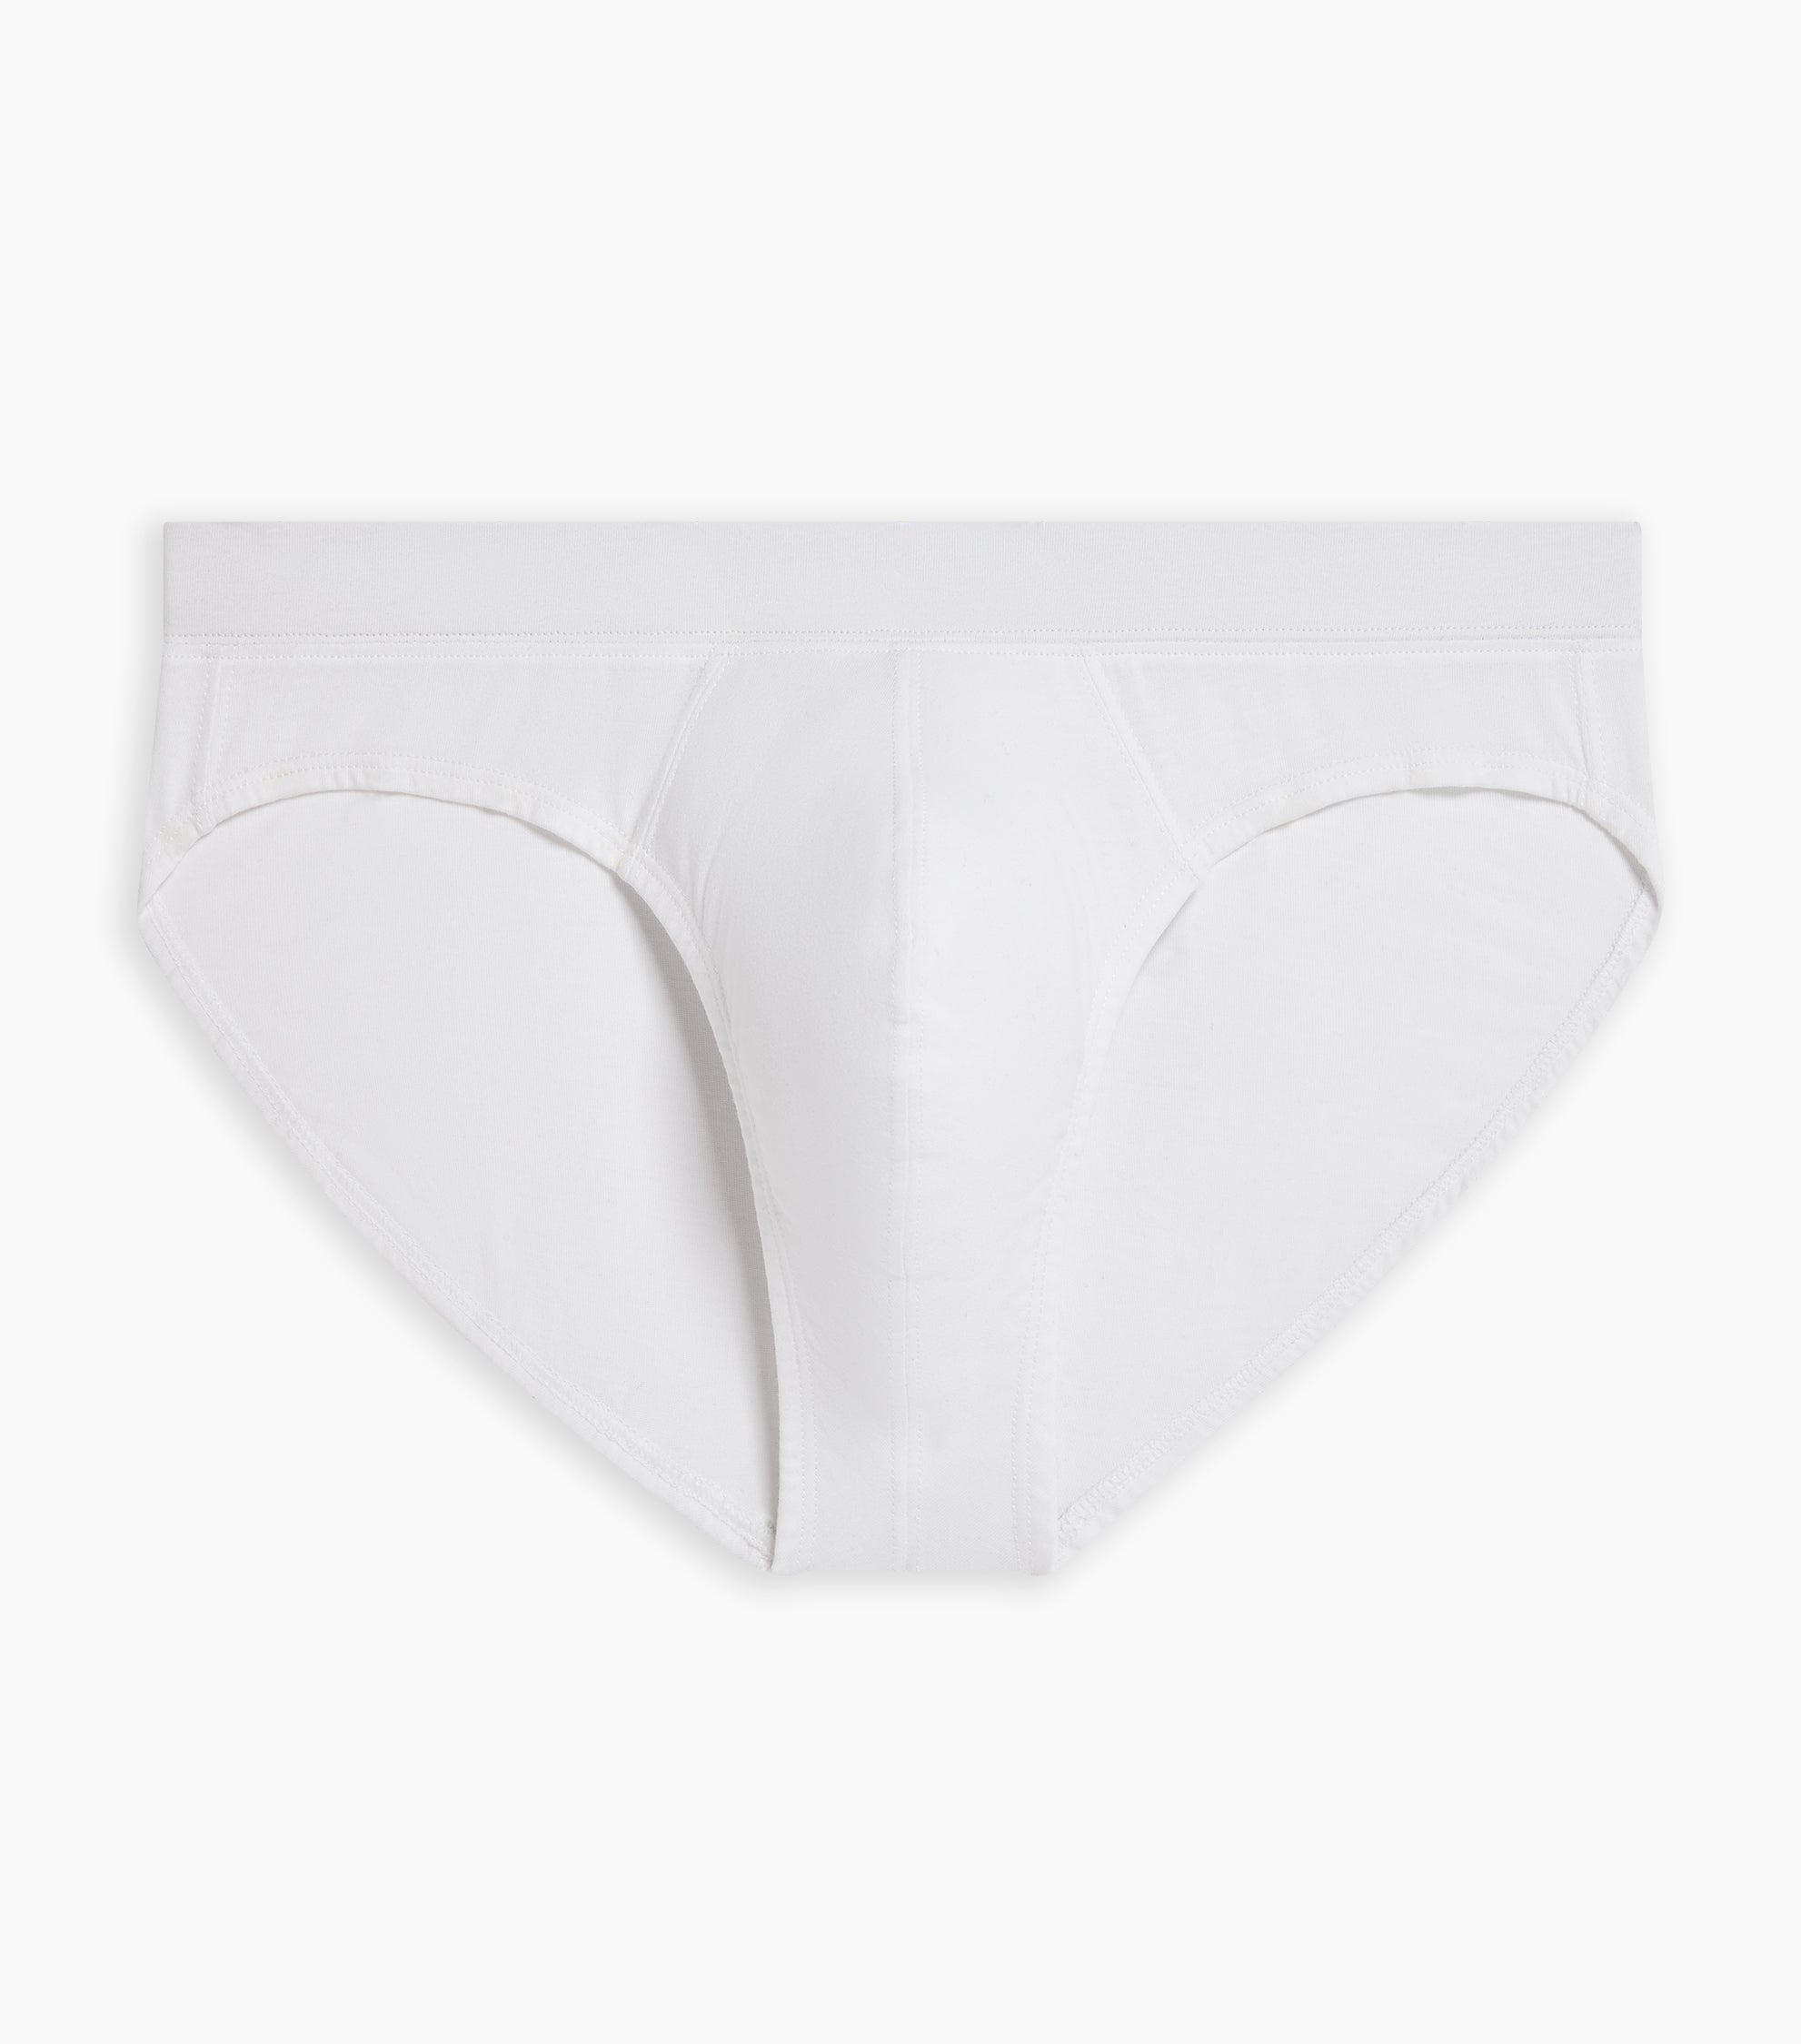 SKINY Advantage Cotton Bikini Brief Two Pack – westlife-underwear